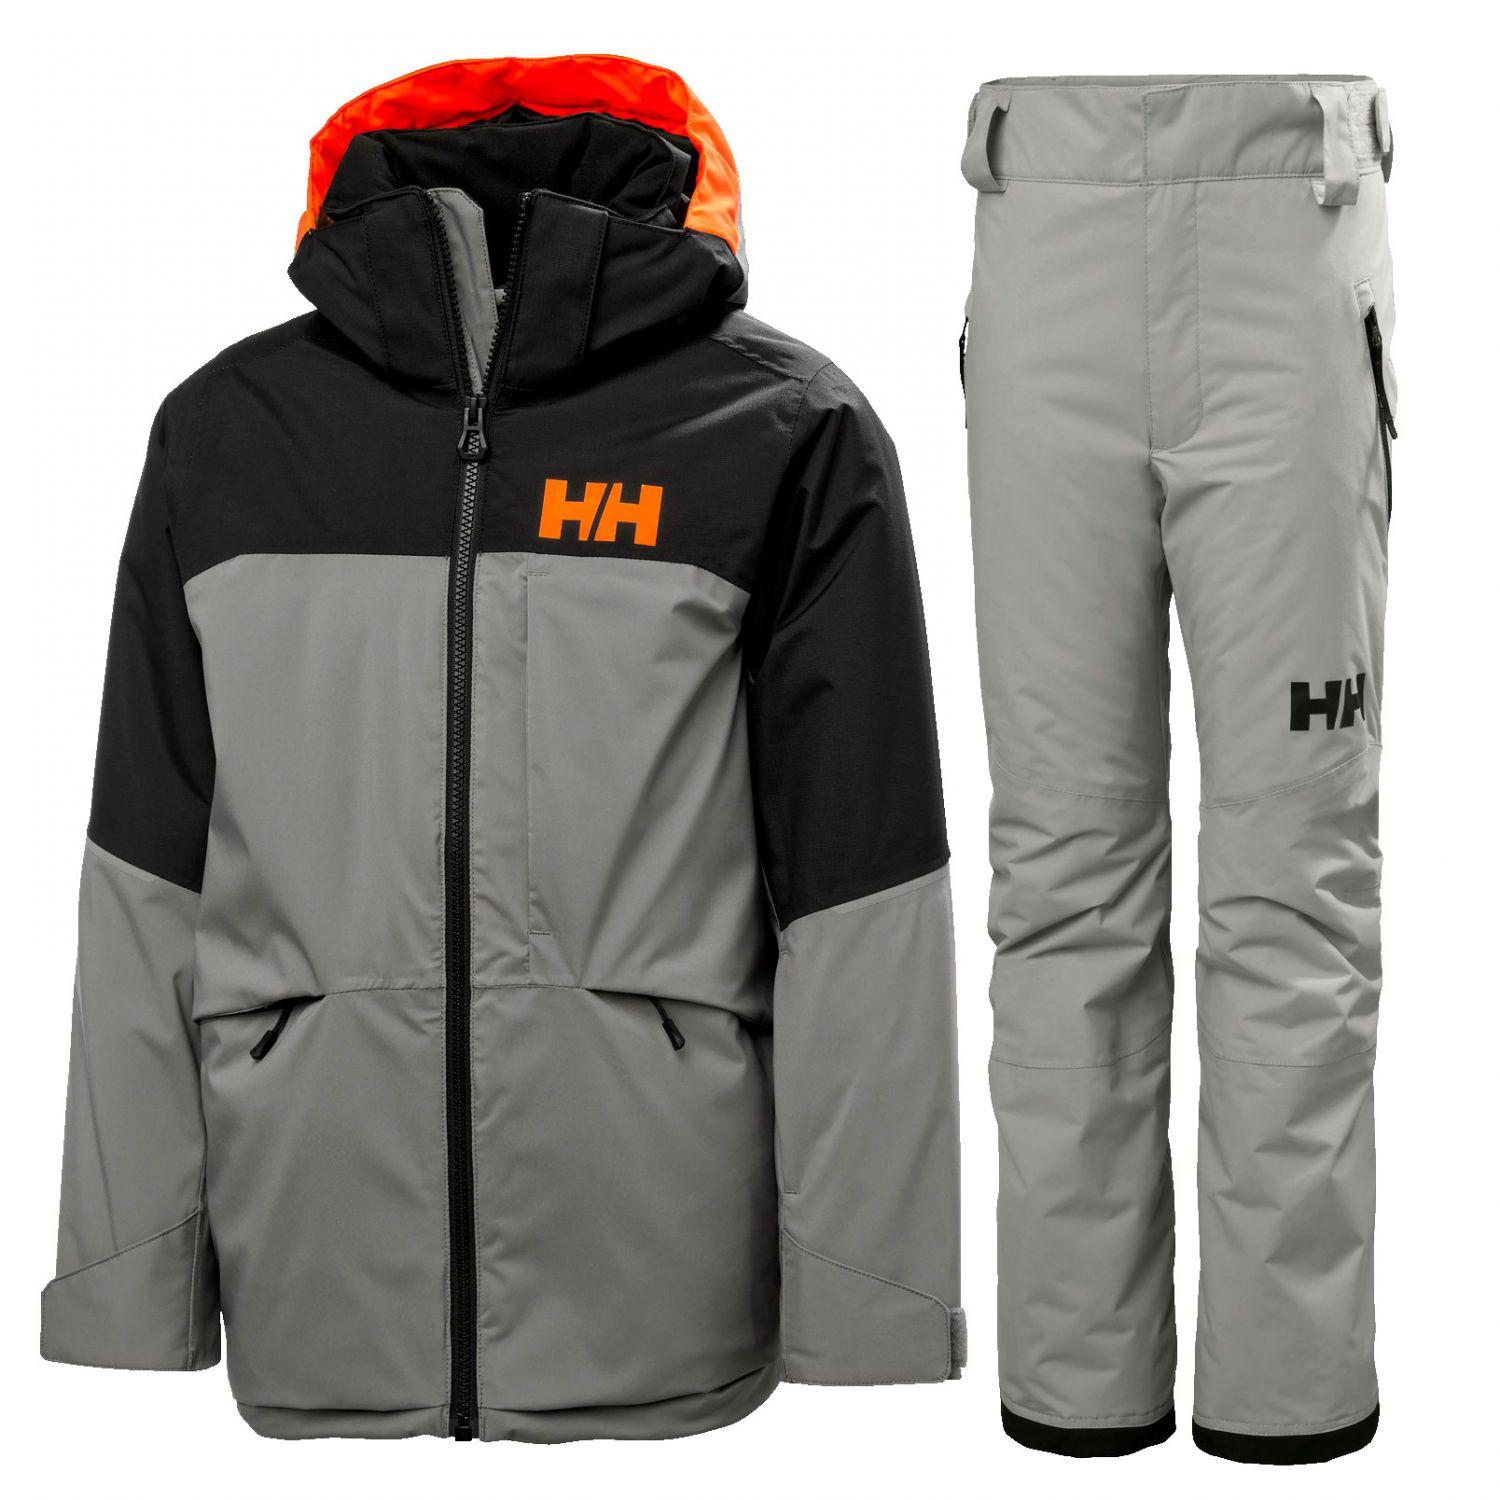 Helly Hansen Summit/Legendary skiset, junior, grey